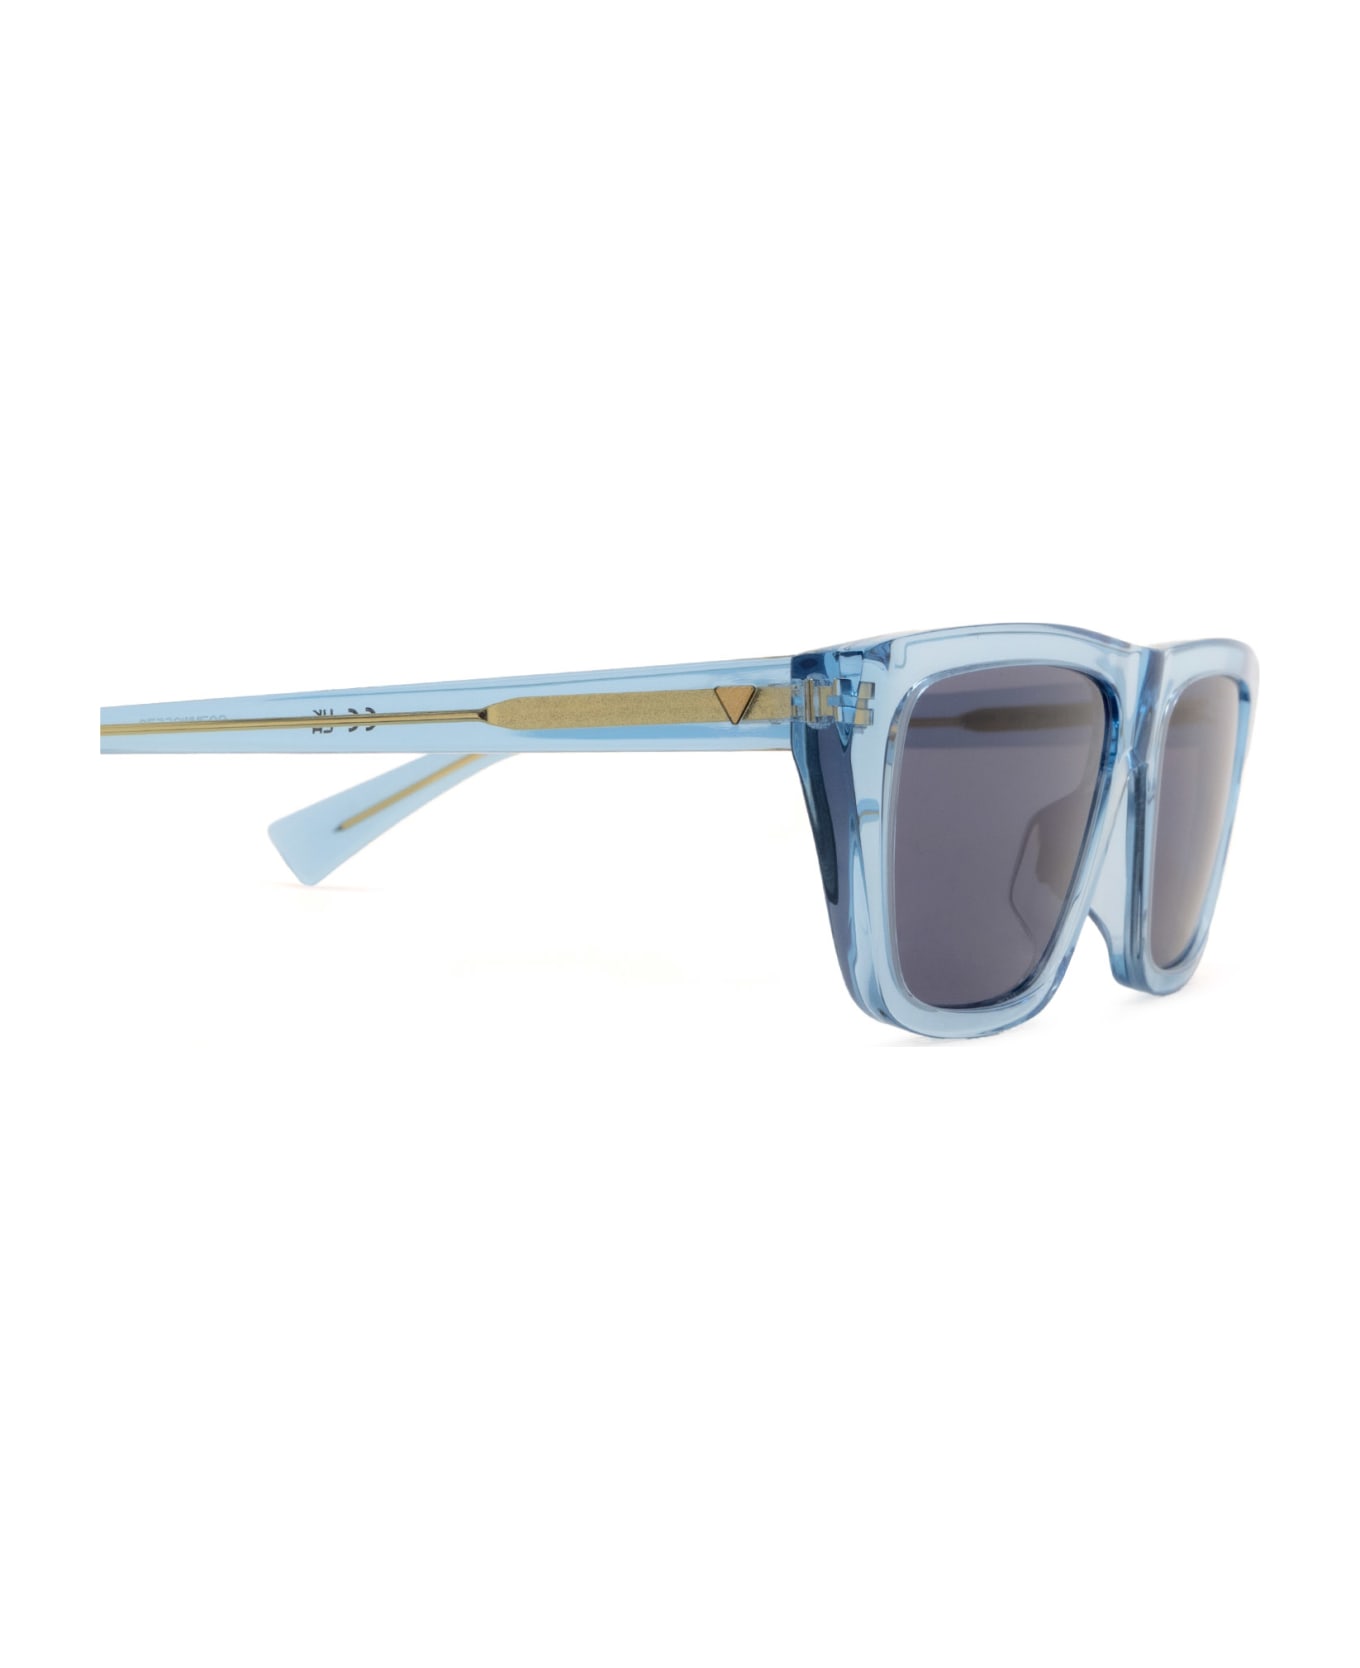 Bottega Veneta Eyewear Bv1291s Light Blue Sunglasses - Light Blue